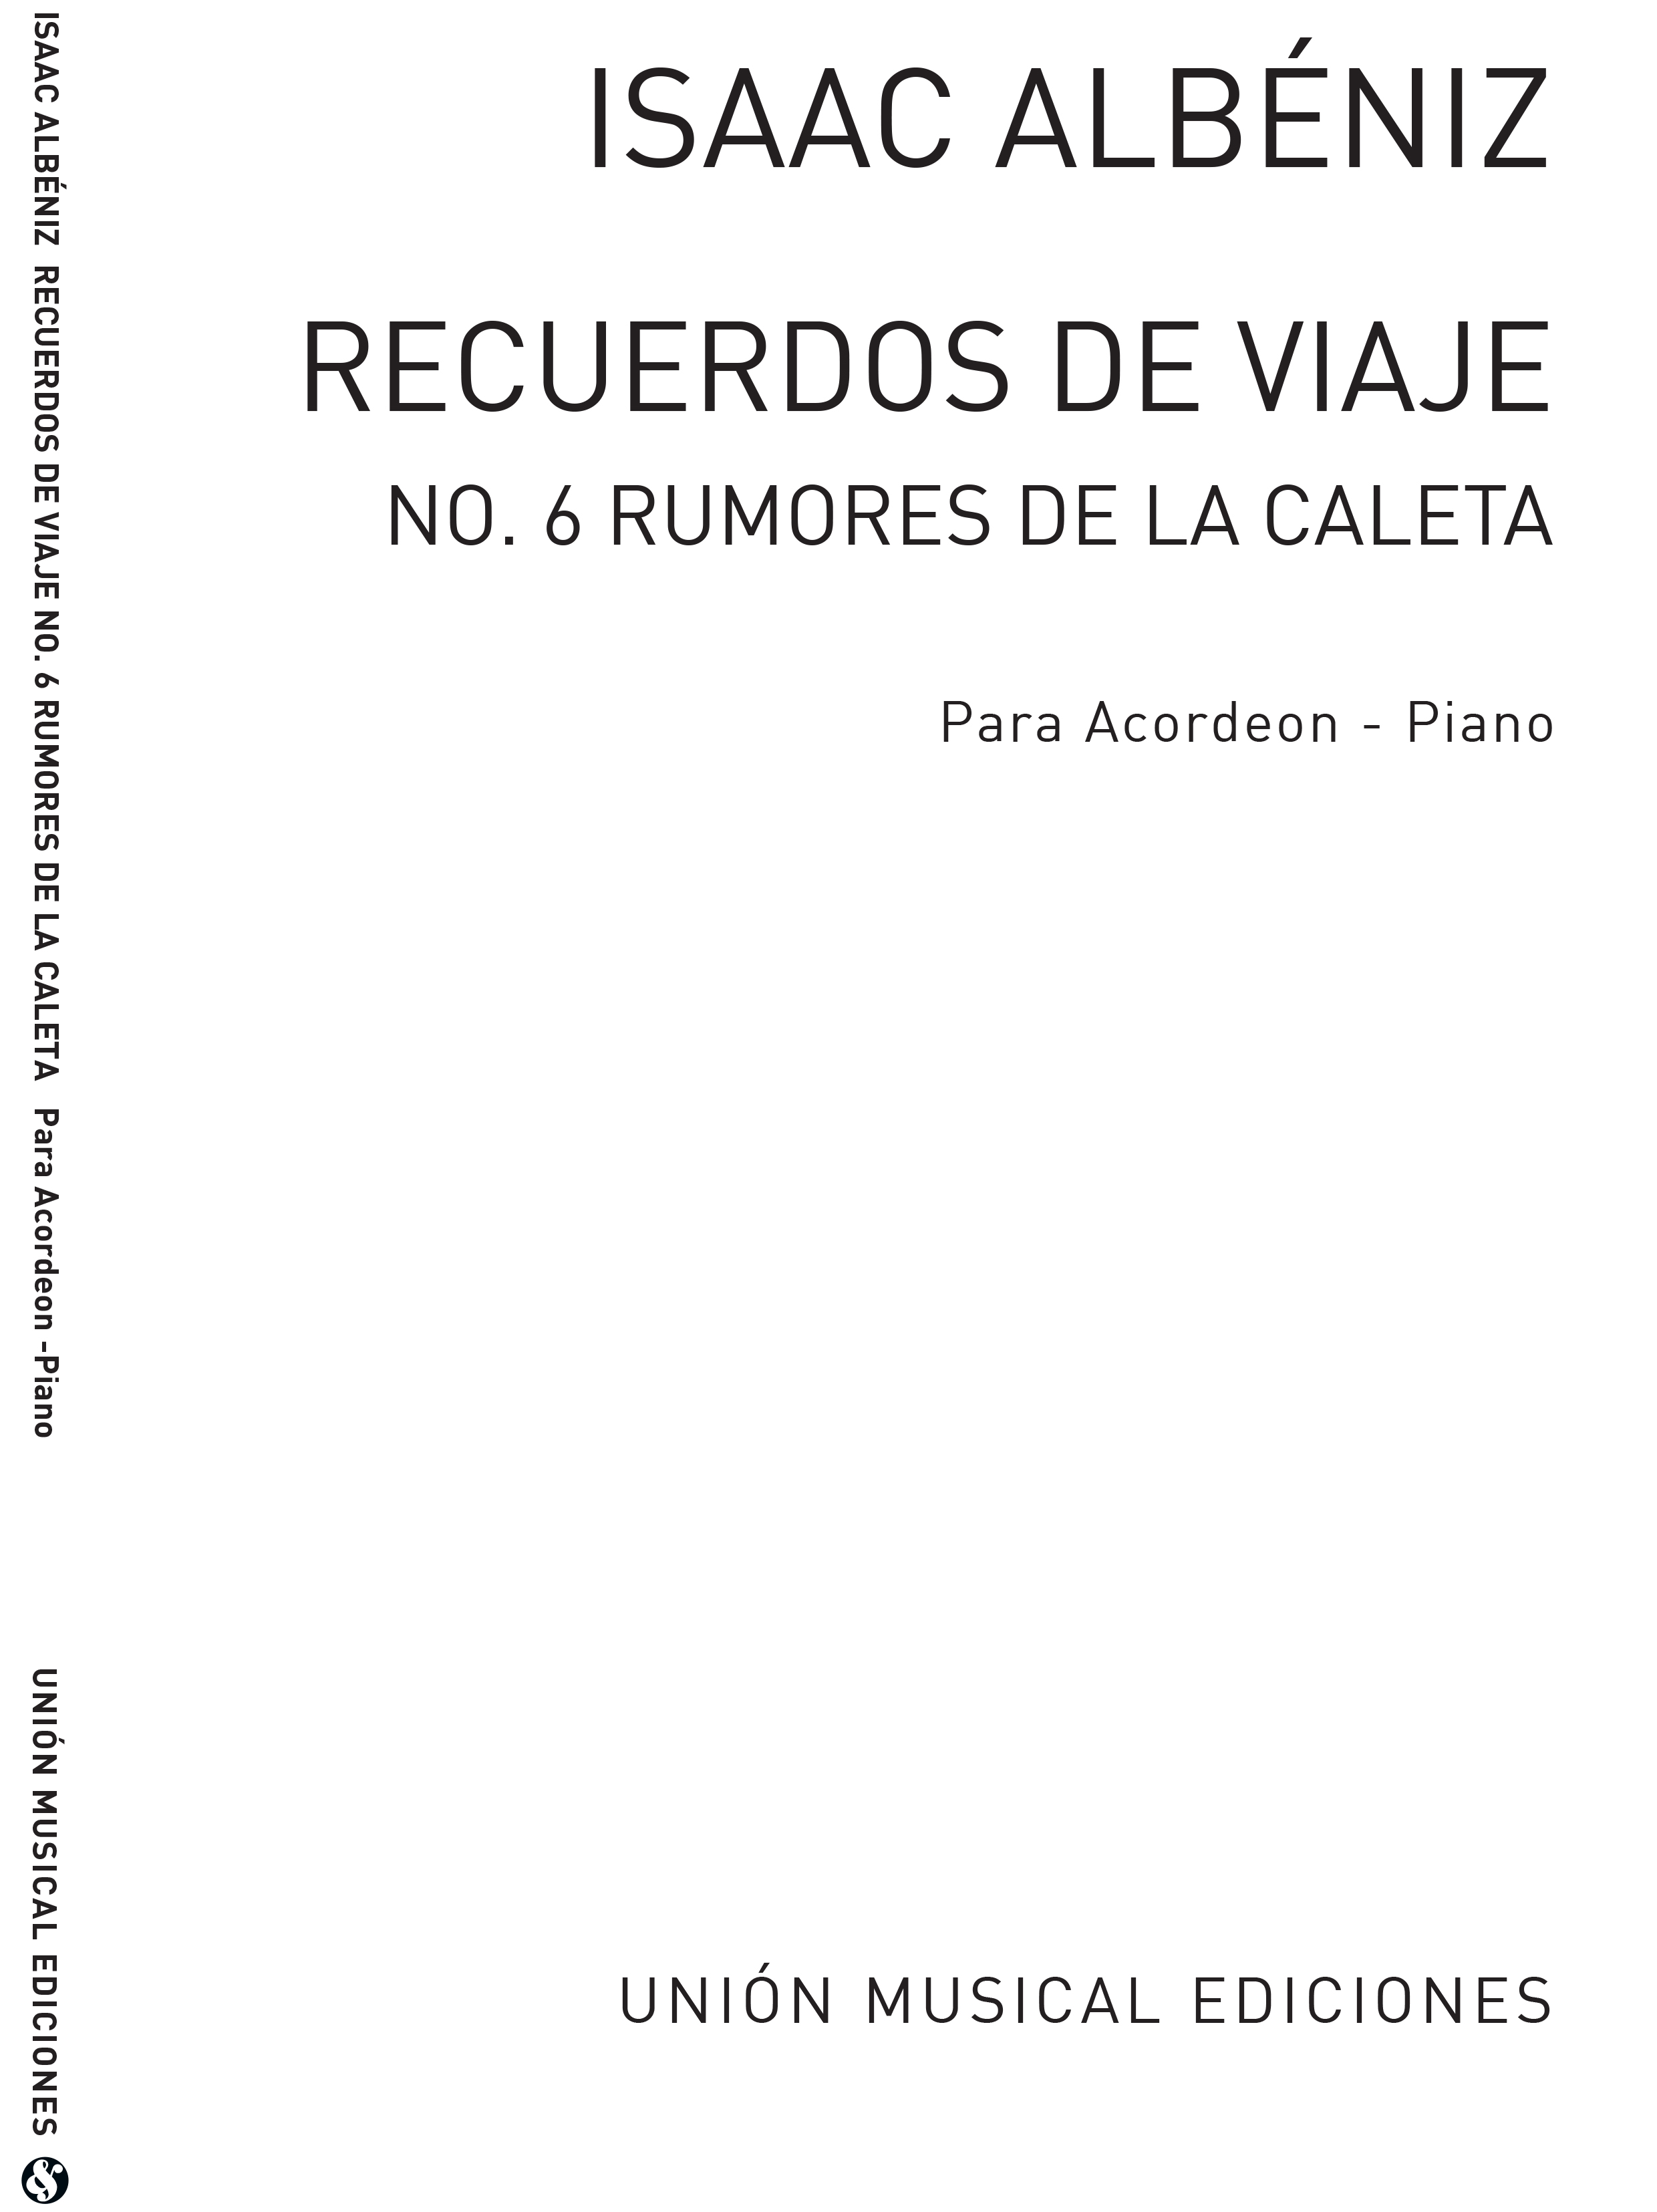 Isaac Alb�niz: Rumores De La Caleta - Malaguena: Accordion: Instrumental Work